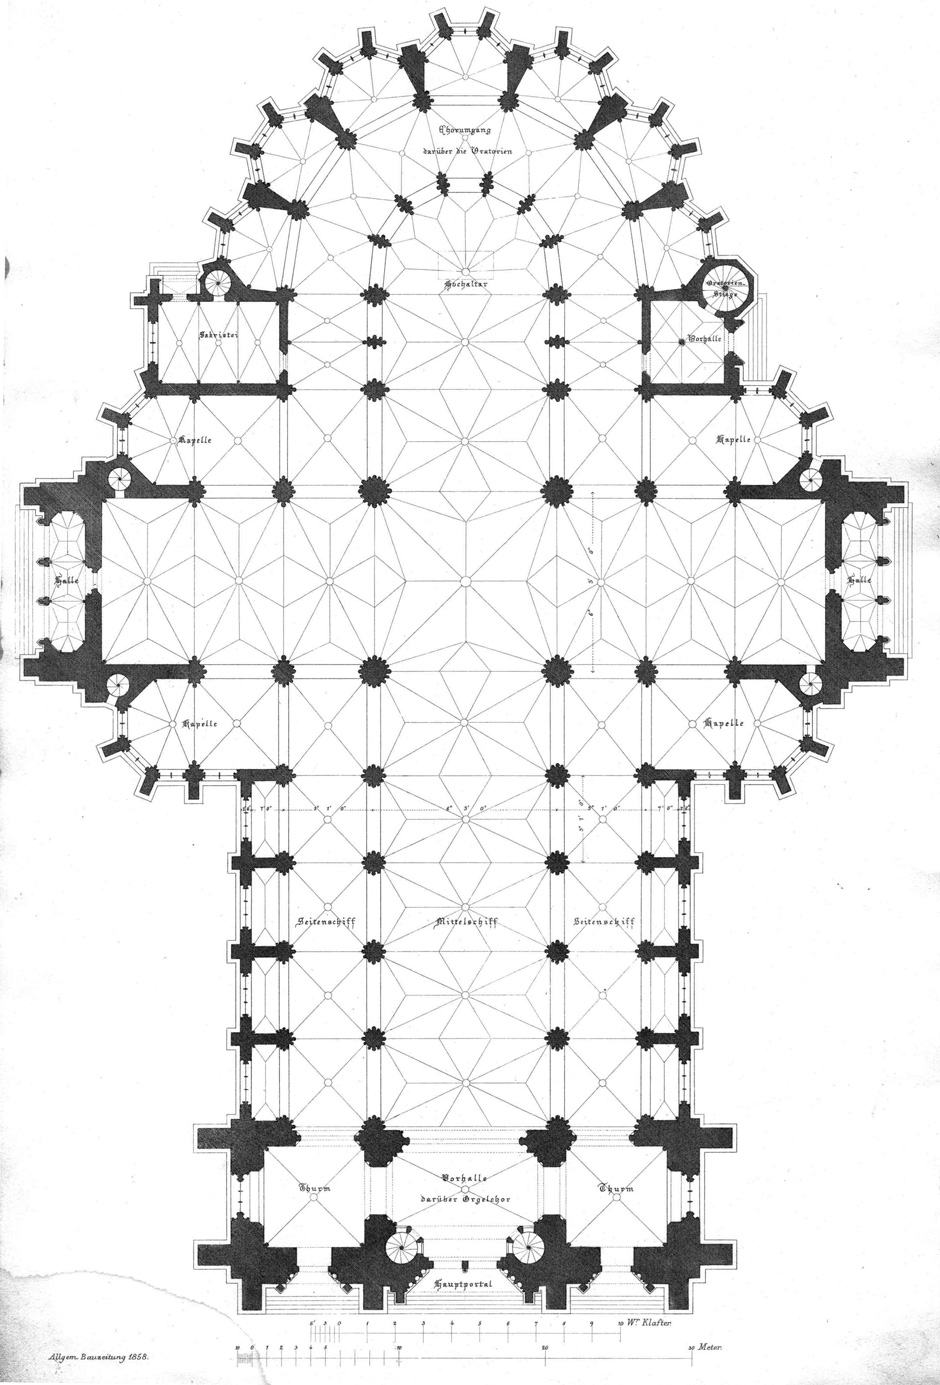 Archivbild 2: Grundriss der Votivkirche in Wien